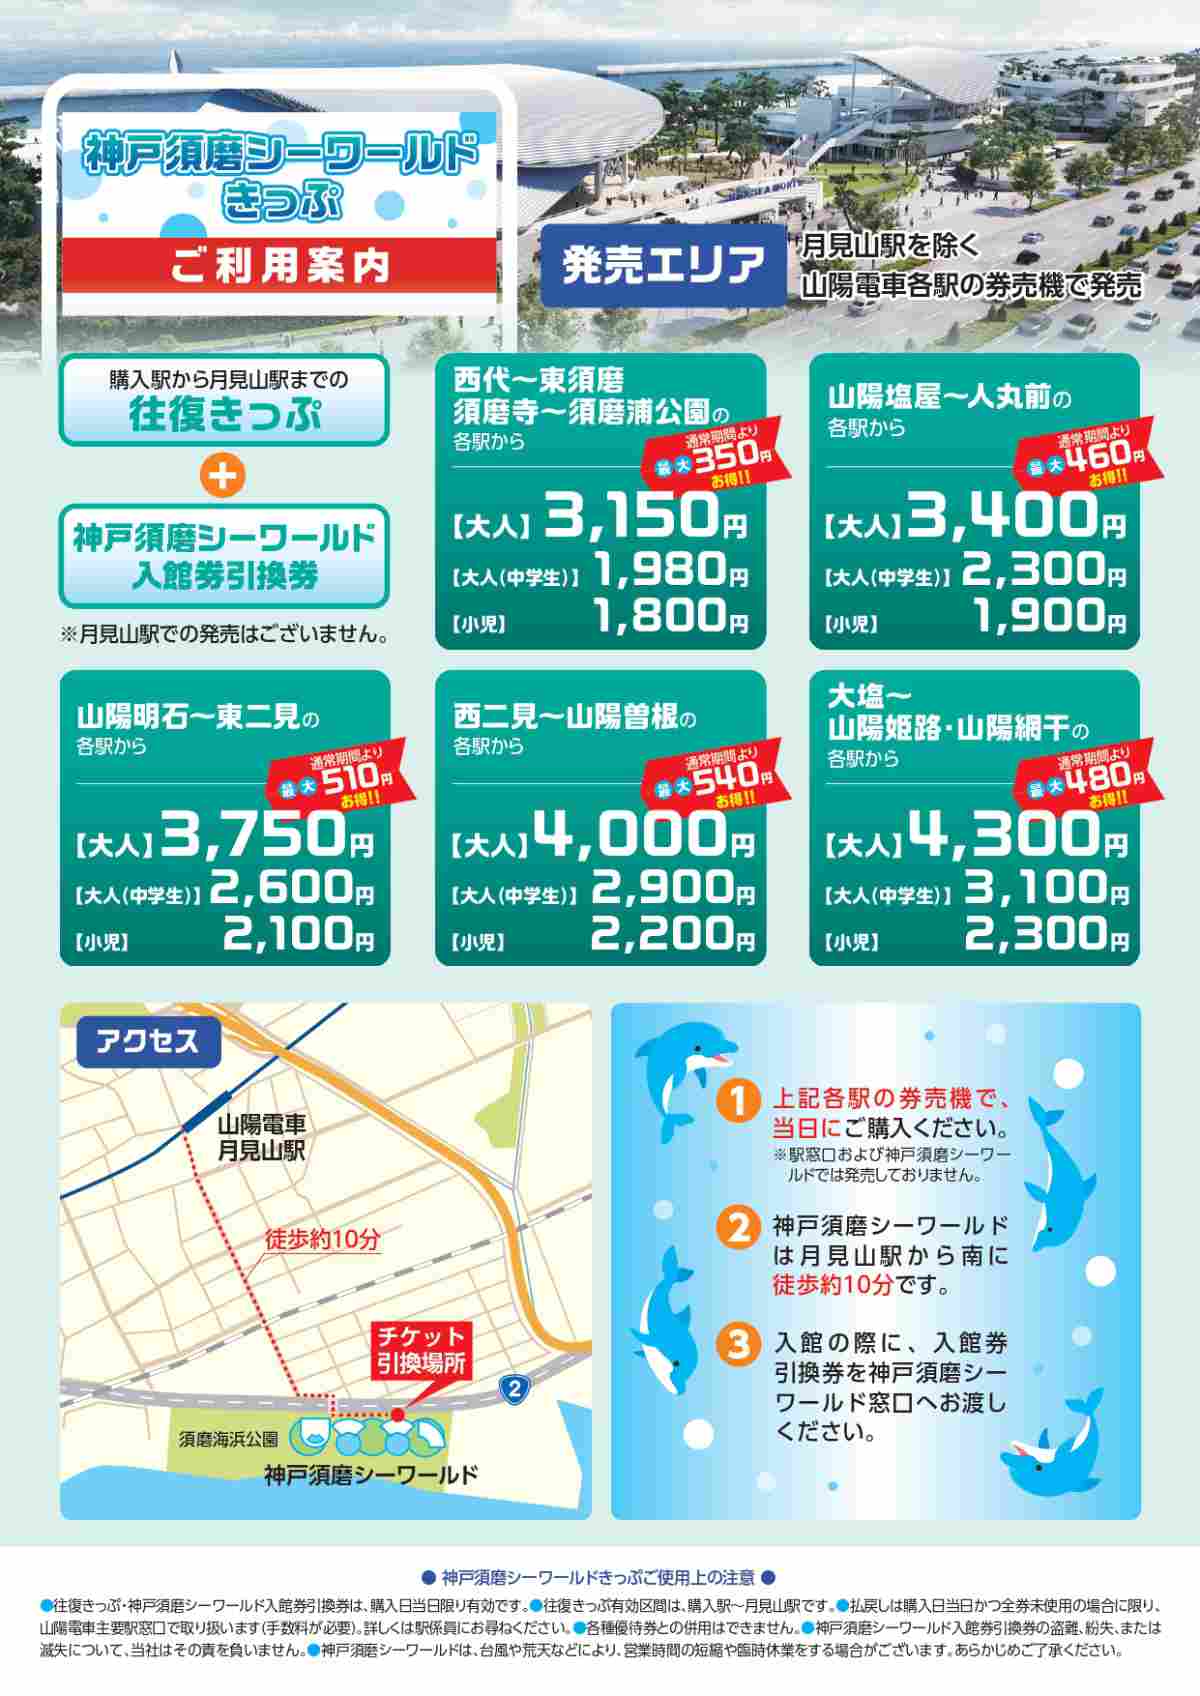 山陽電車が「神戸須磨シーワールドきっぷ」の販売をスタート　神戸市など [画像]